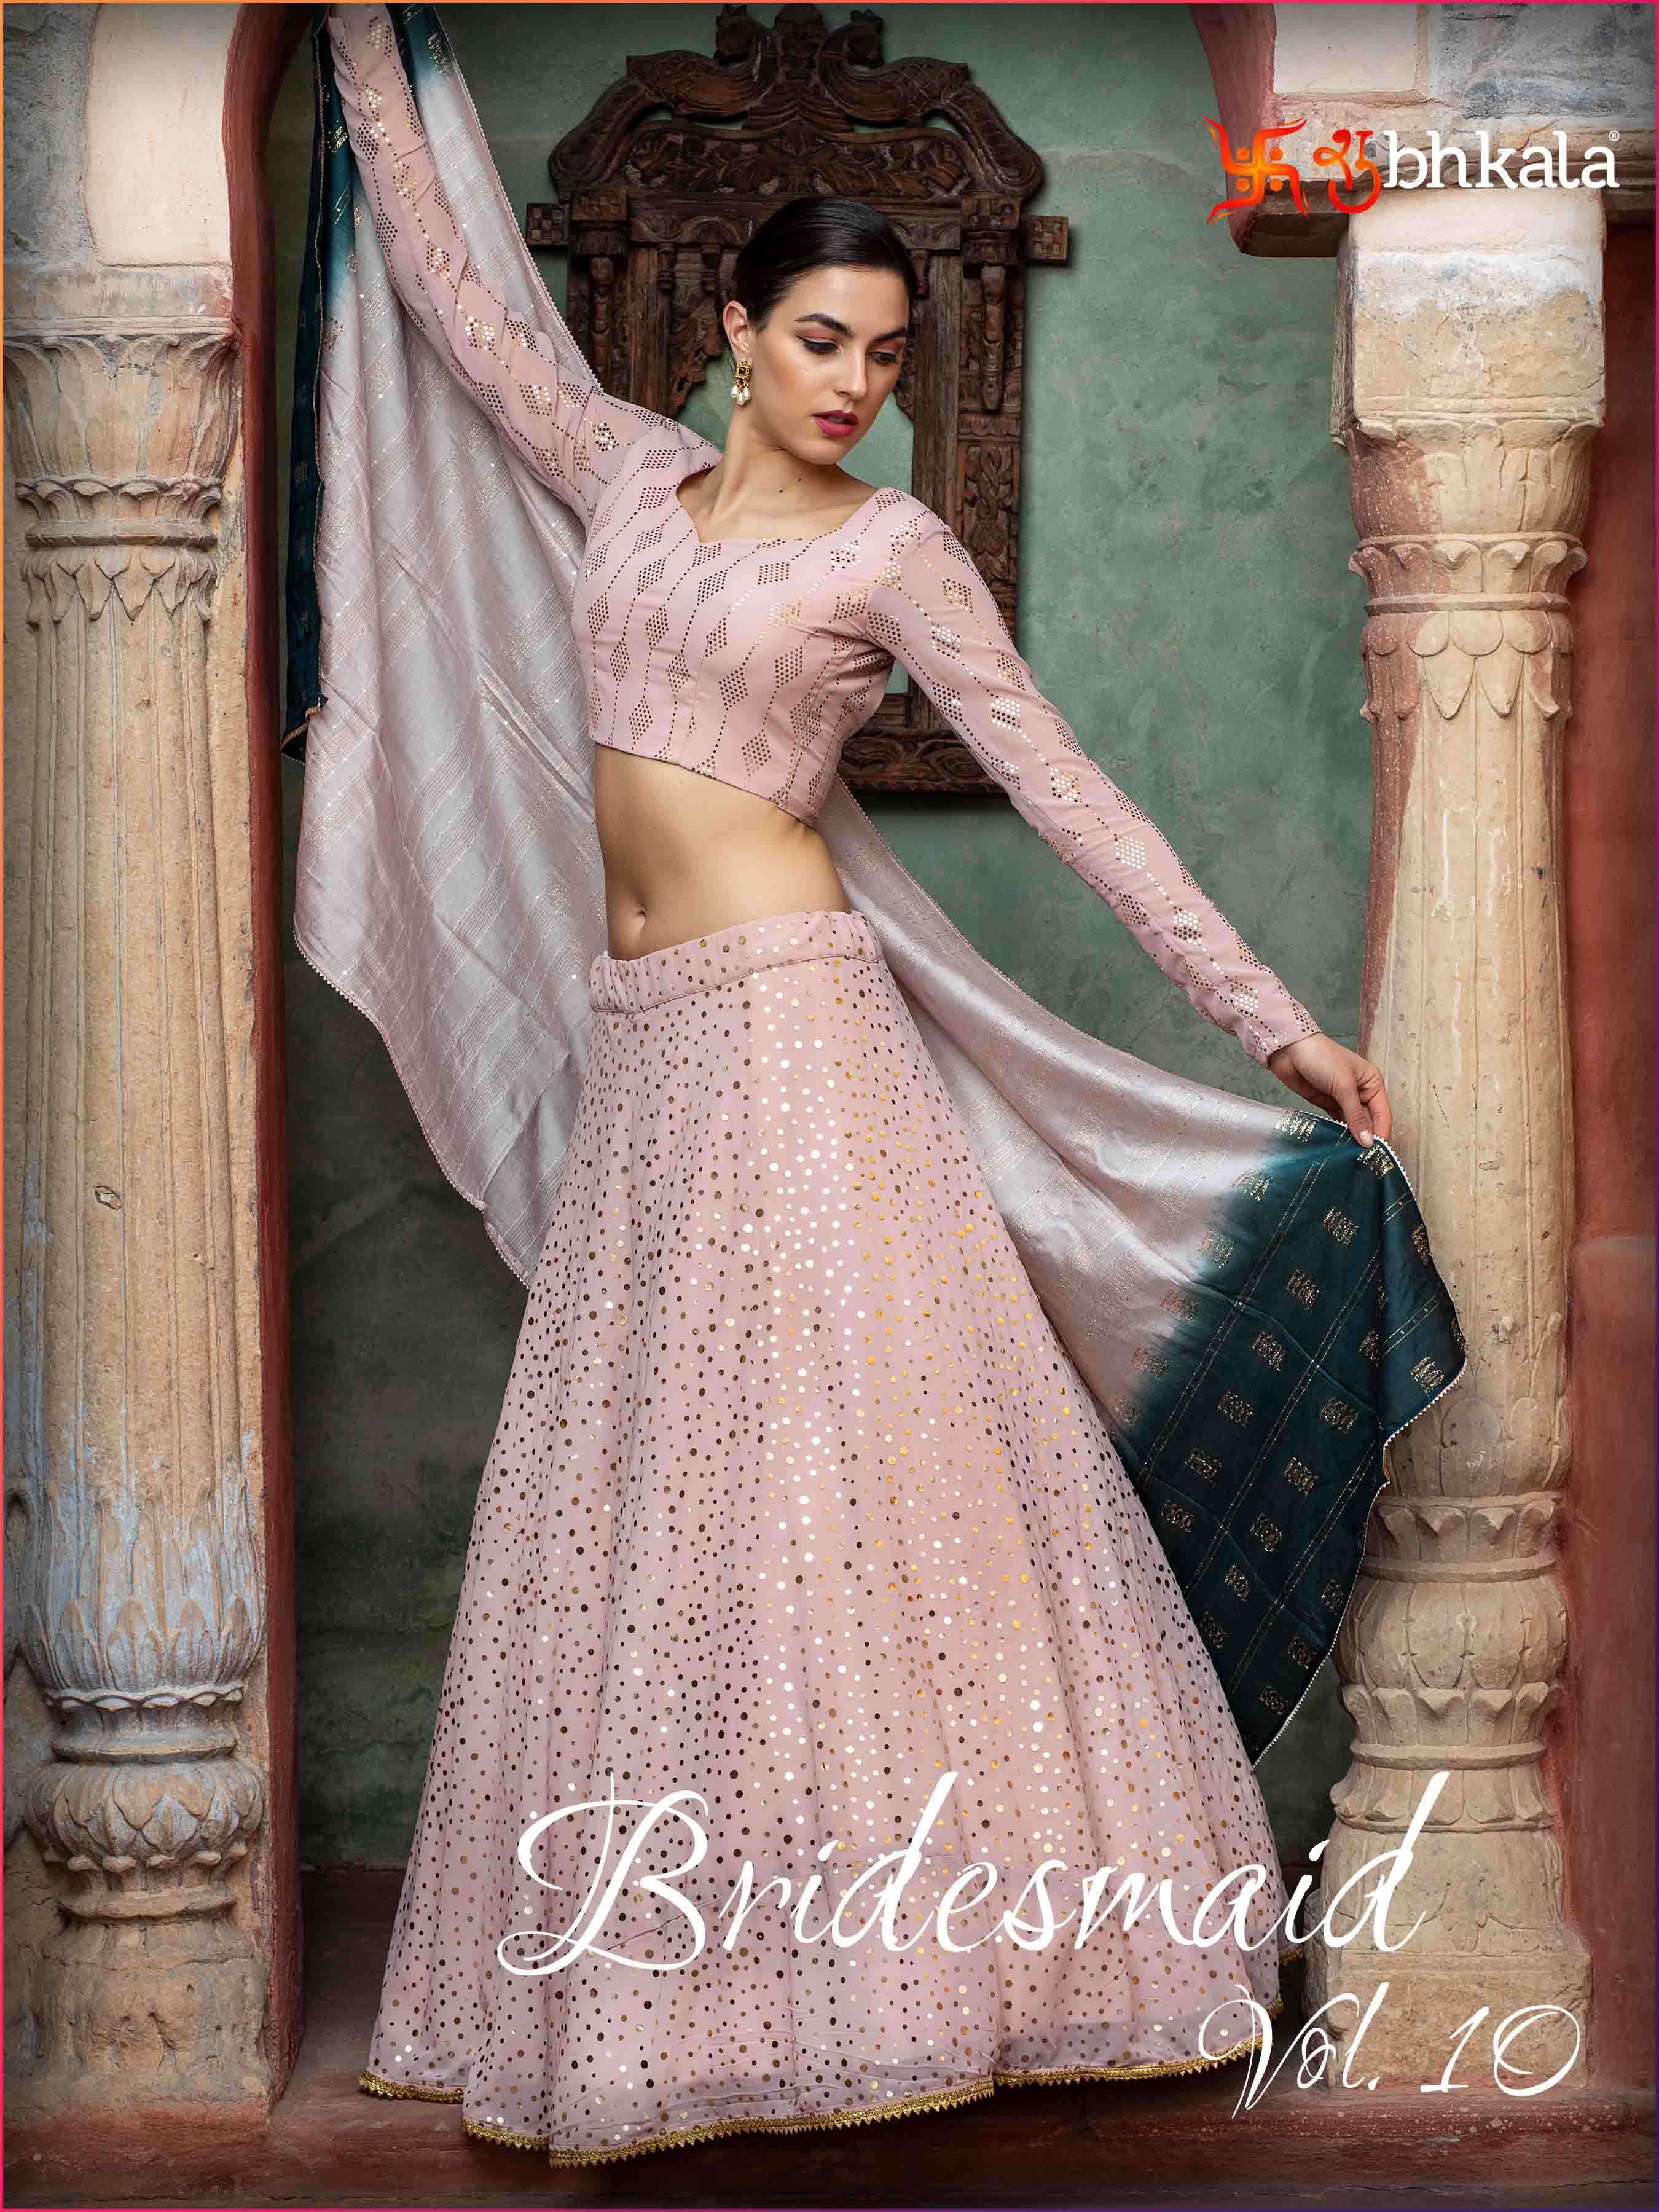 shubhkala bridesmaid vol 10 designer exclusive lehenga choli collection